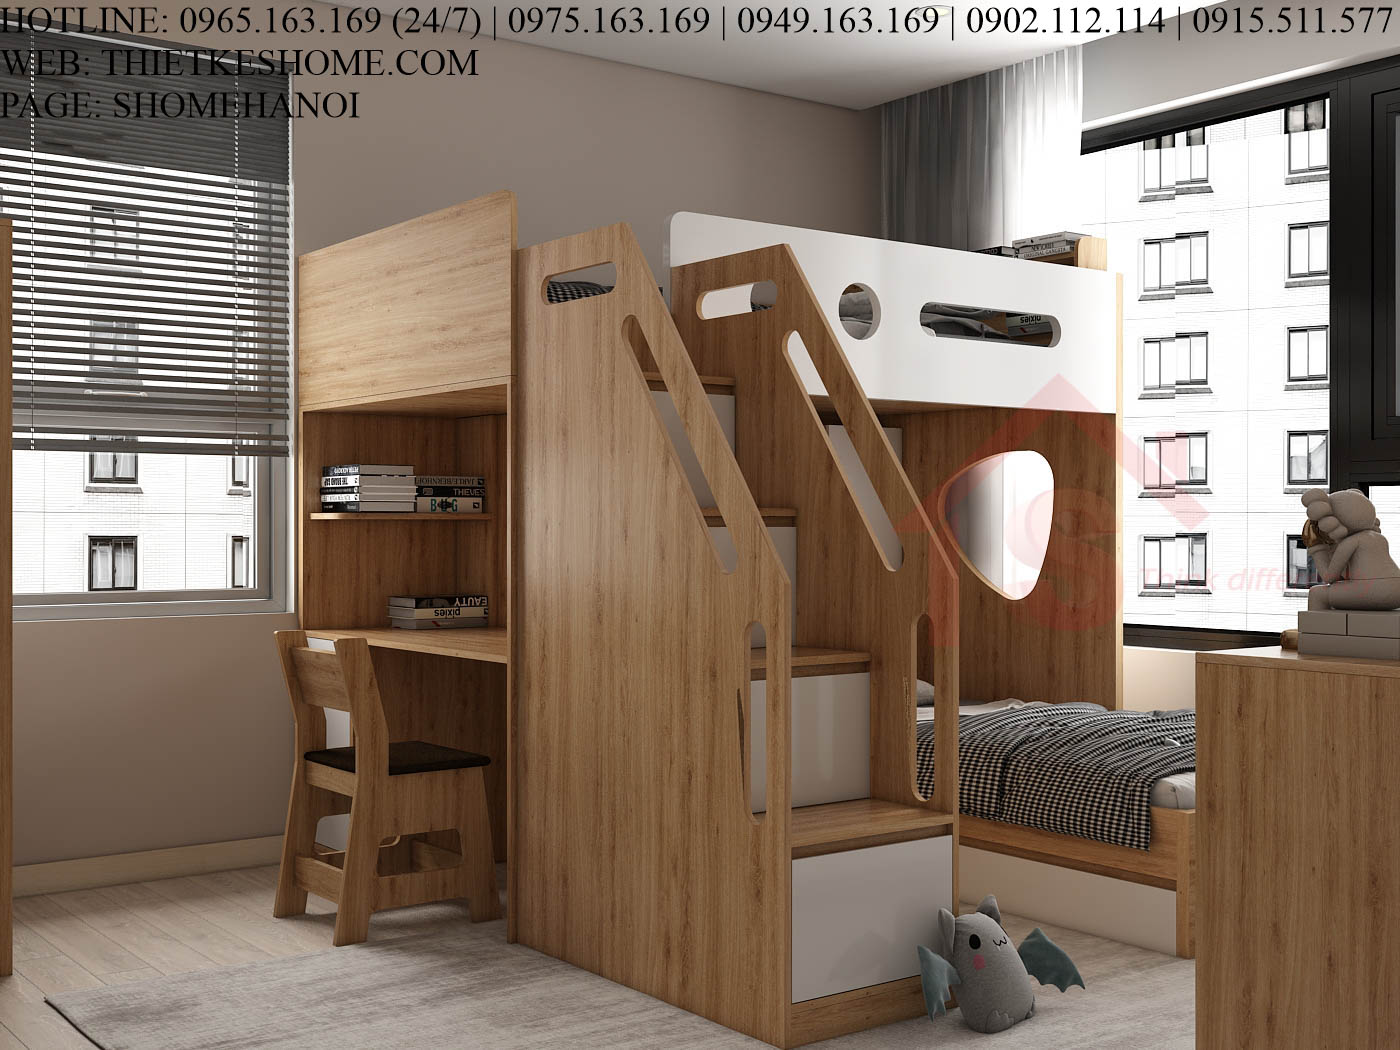 S HOME Combo mẫu nội thất phòng ngủ cho bé đẹp hiện đại tiện dụng SHOME6825